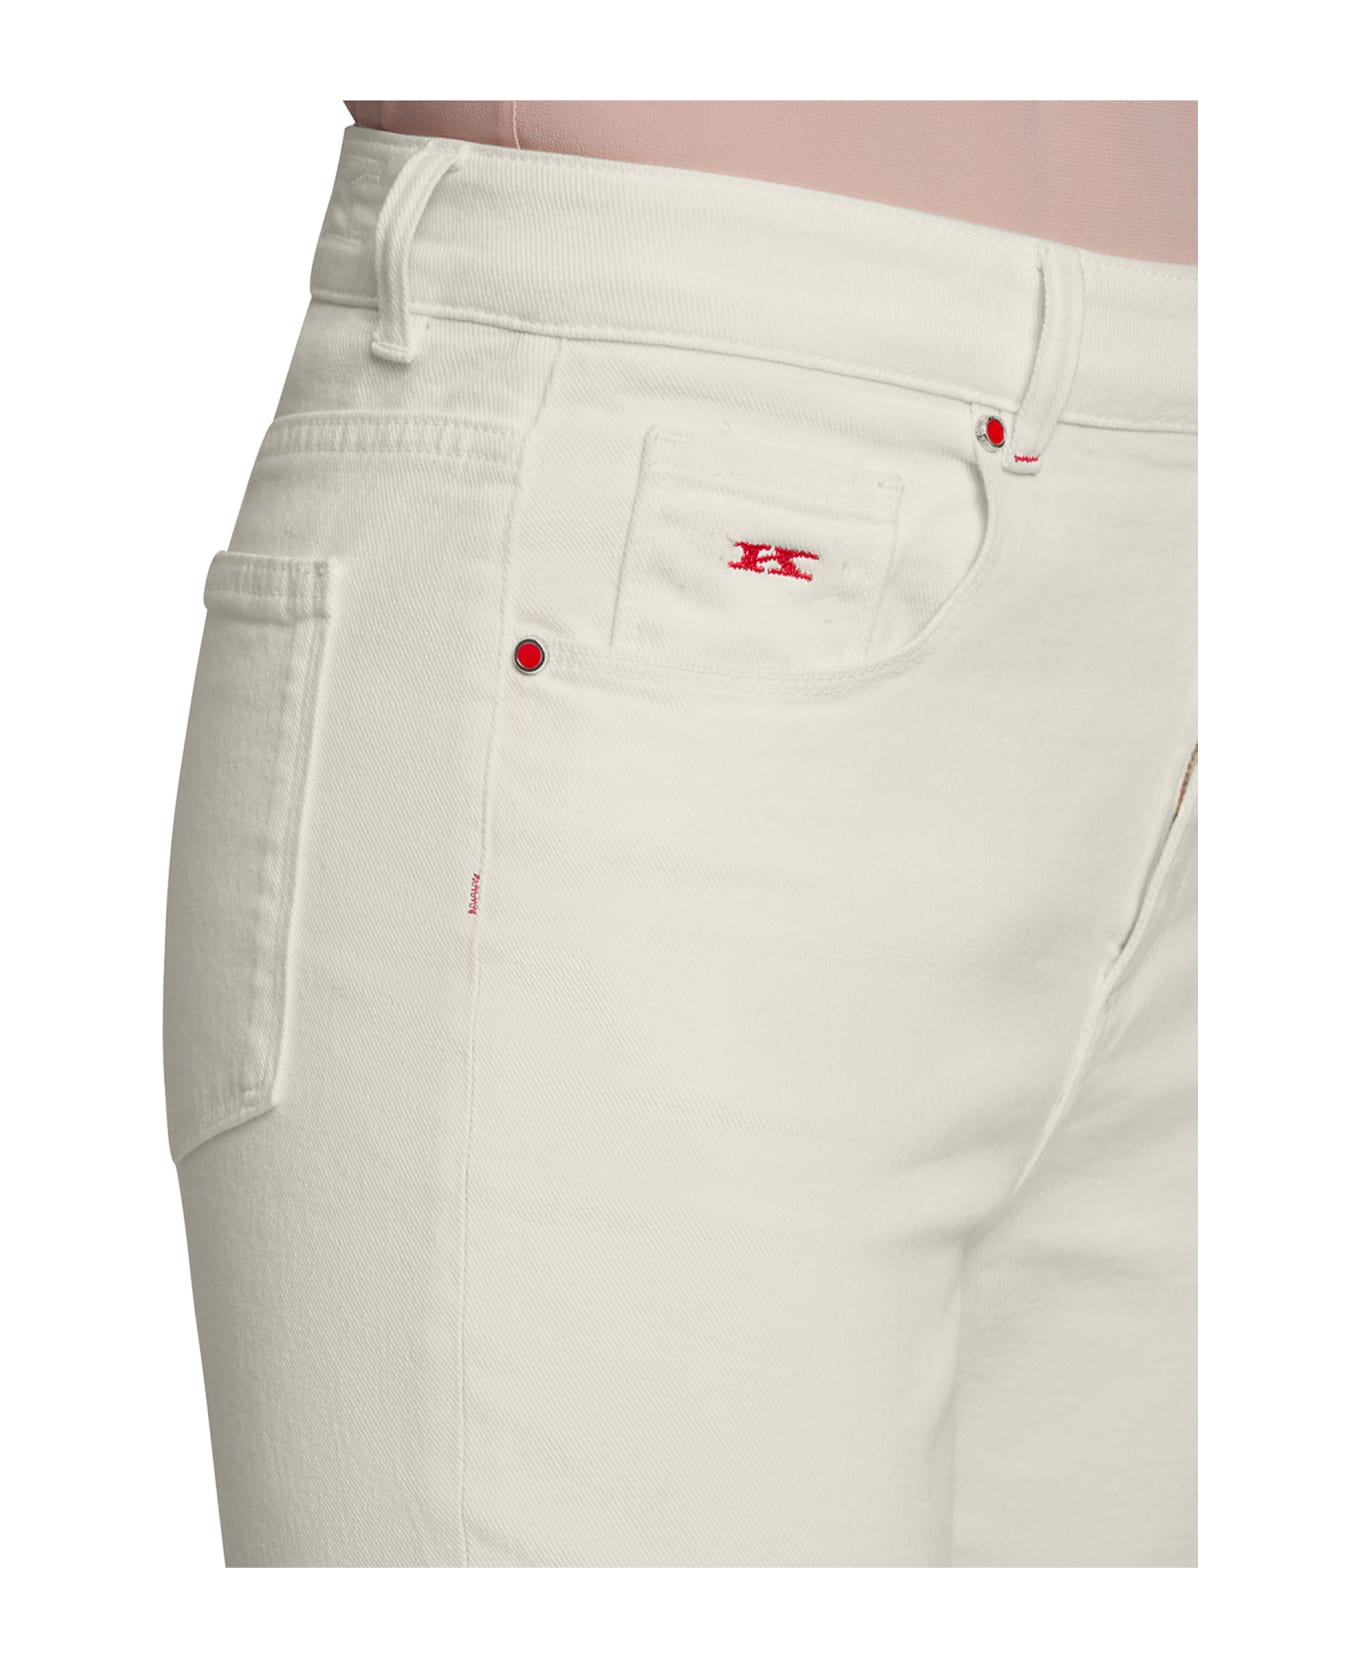 Kiton Jns Trousers Cotton - WHITE ボトムス